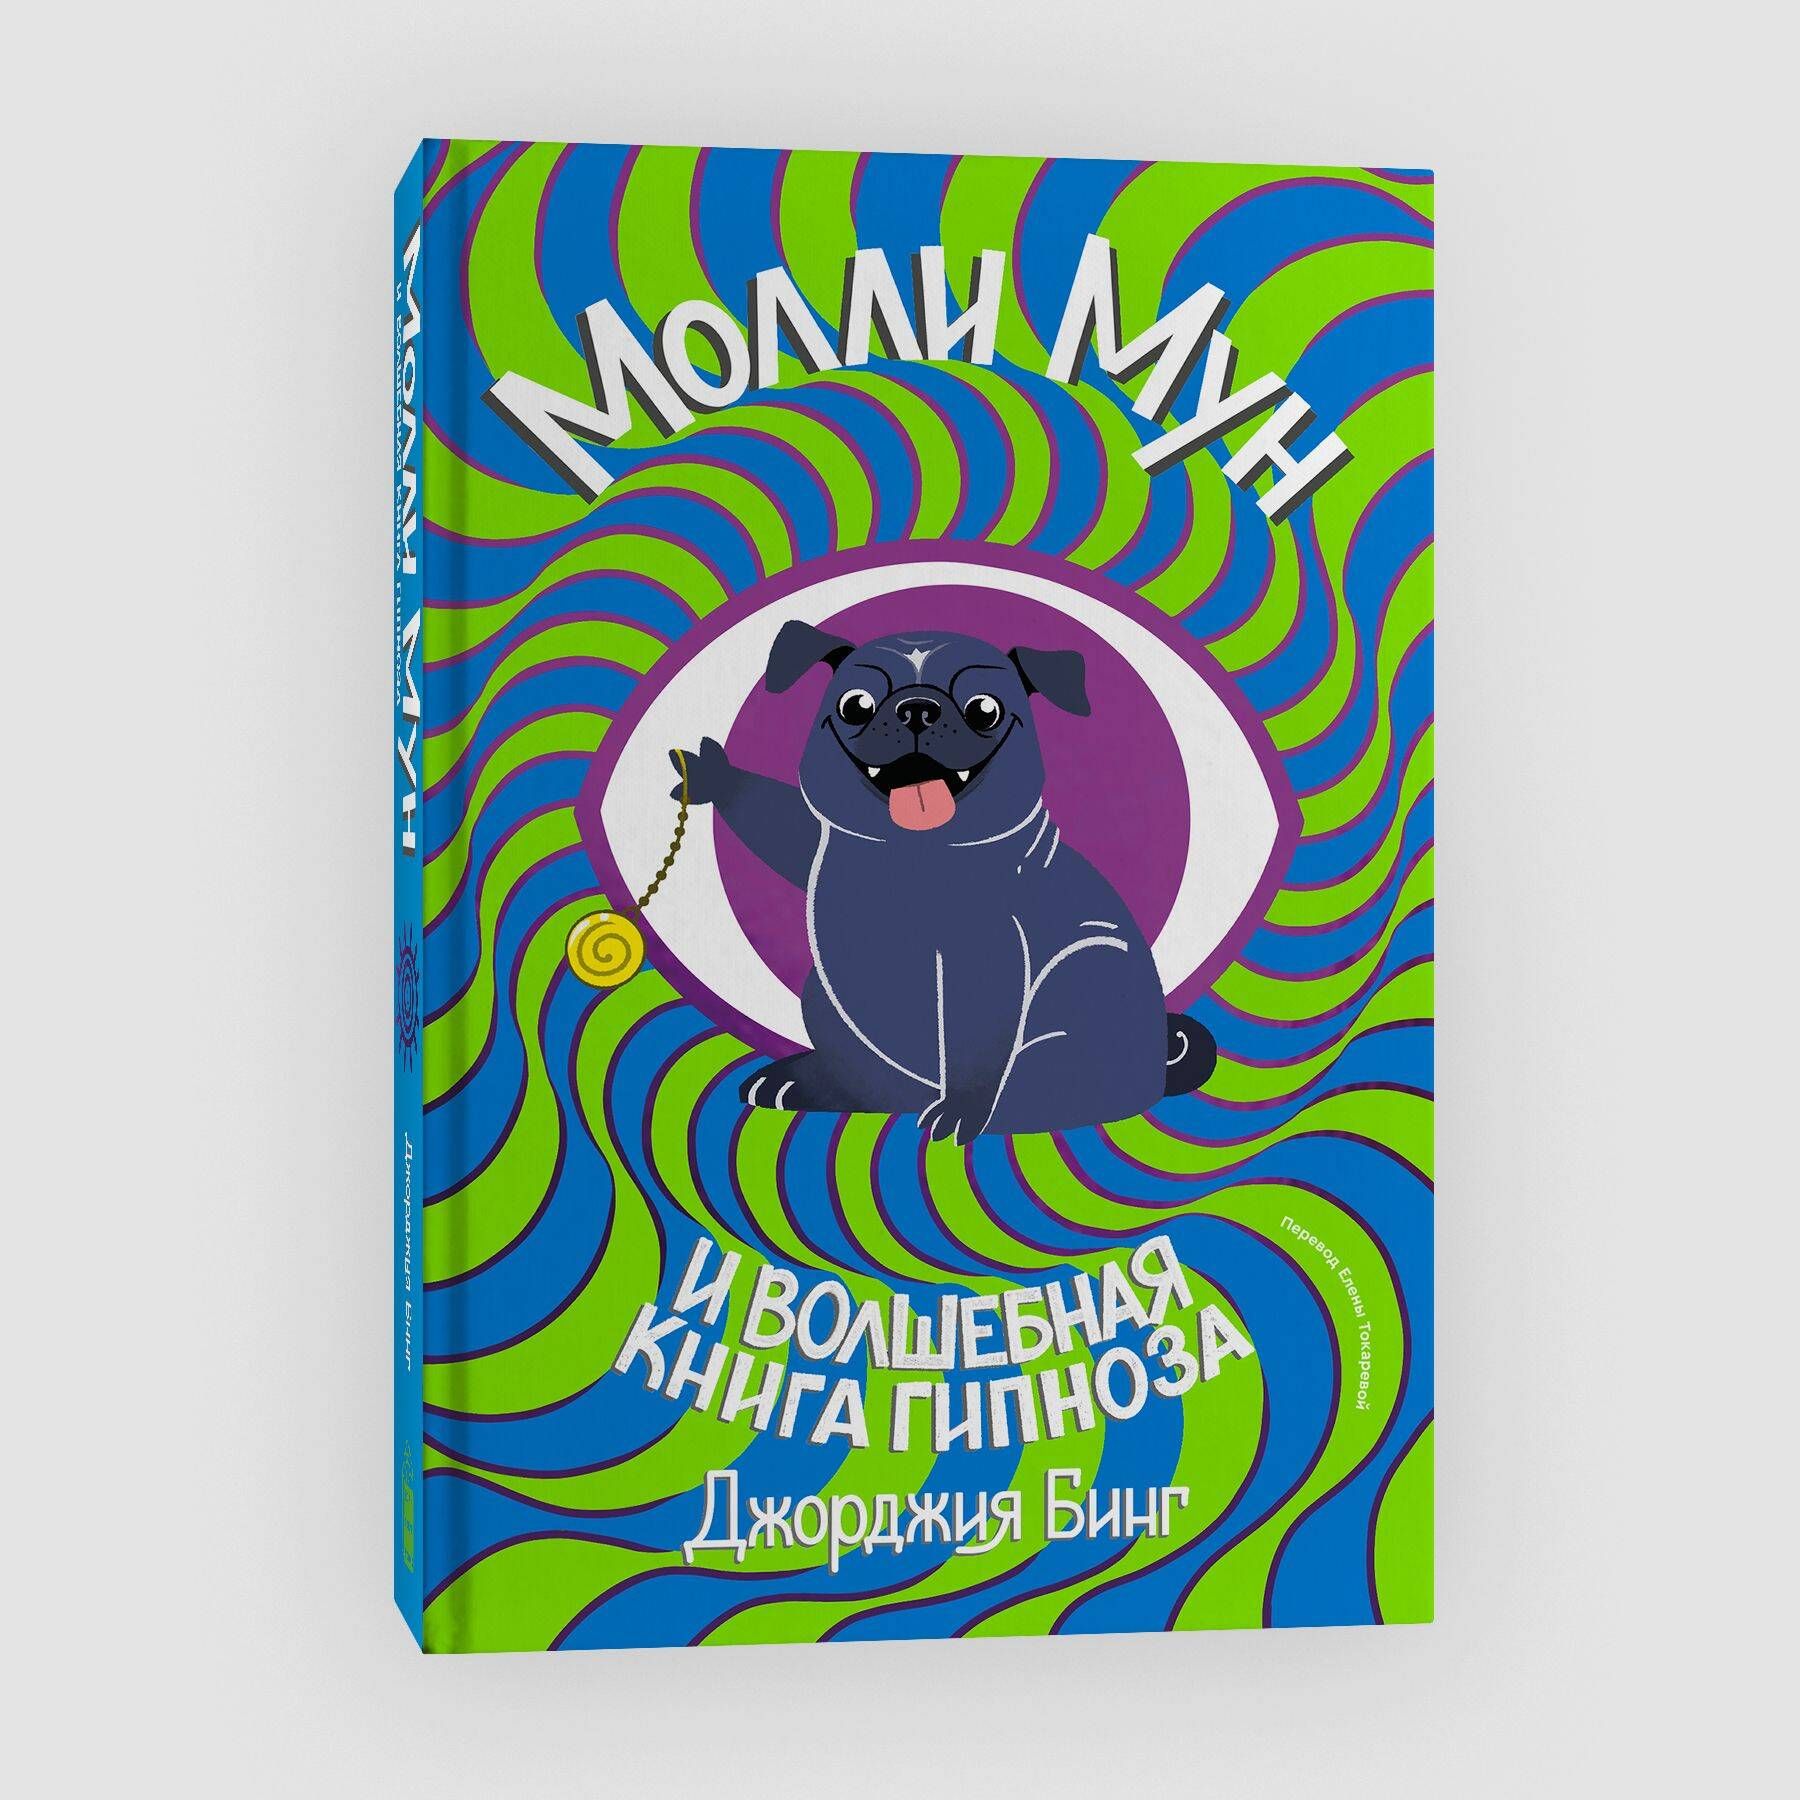 Молли мун гипноза. Молли Мун и Волшебная книга гипноза. Джорджия бинг Молли Мун. Джорджия бинг. «Молли Мун и Волшебная книга гипноза»..